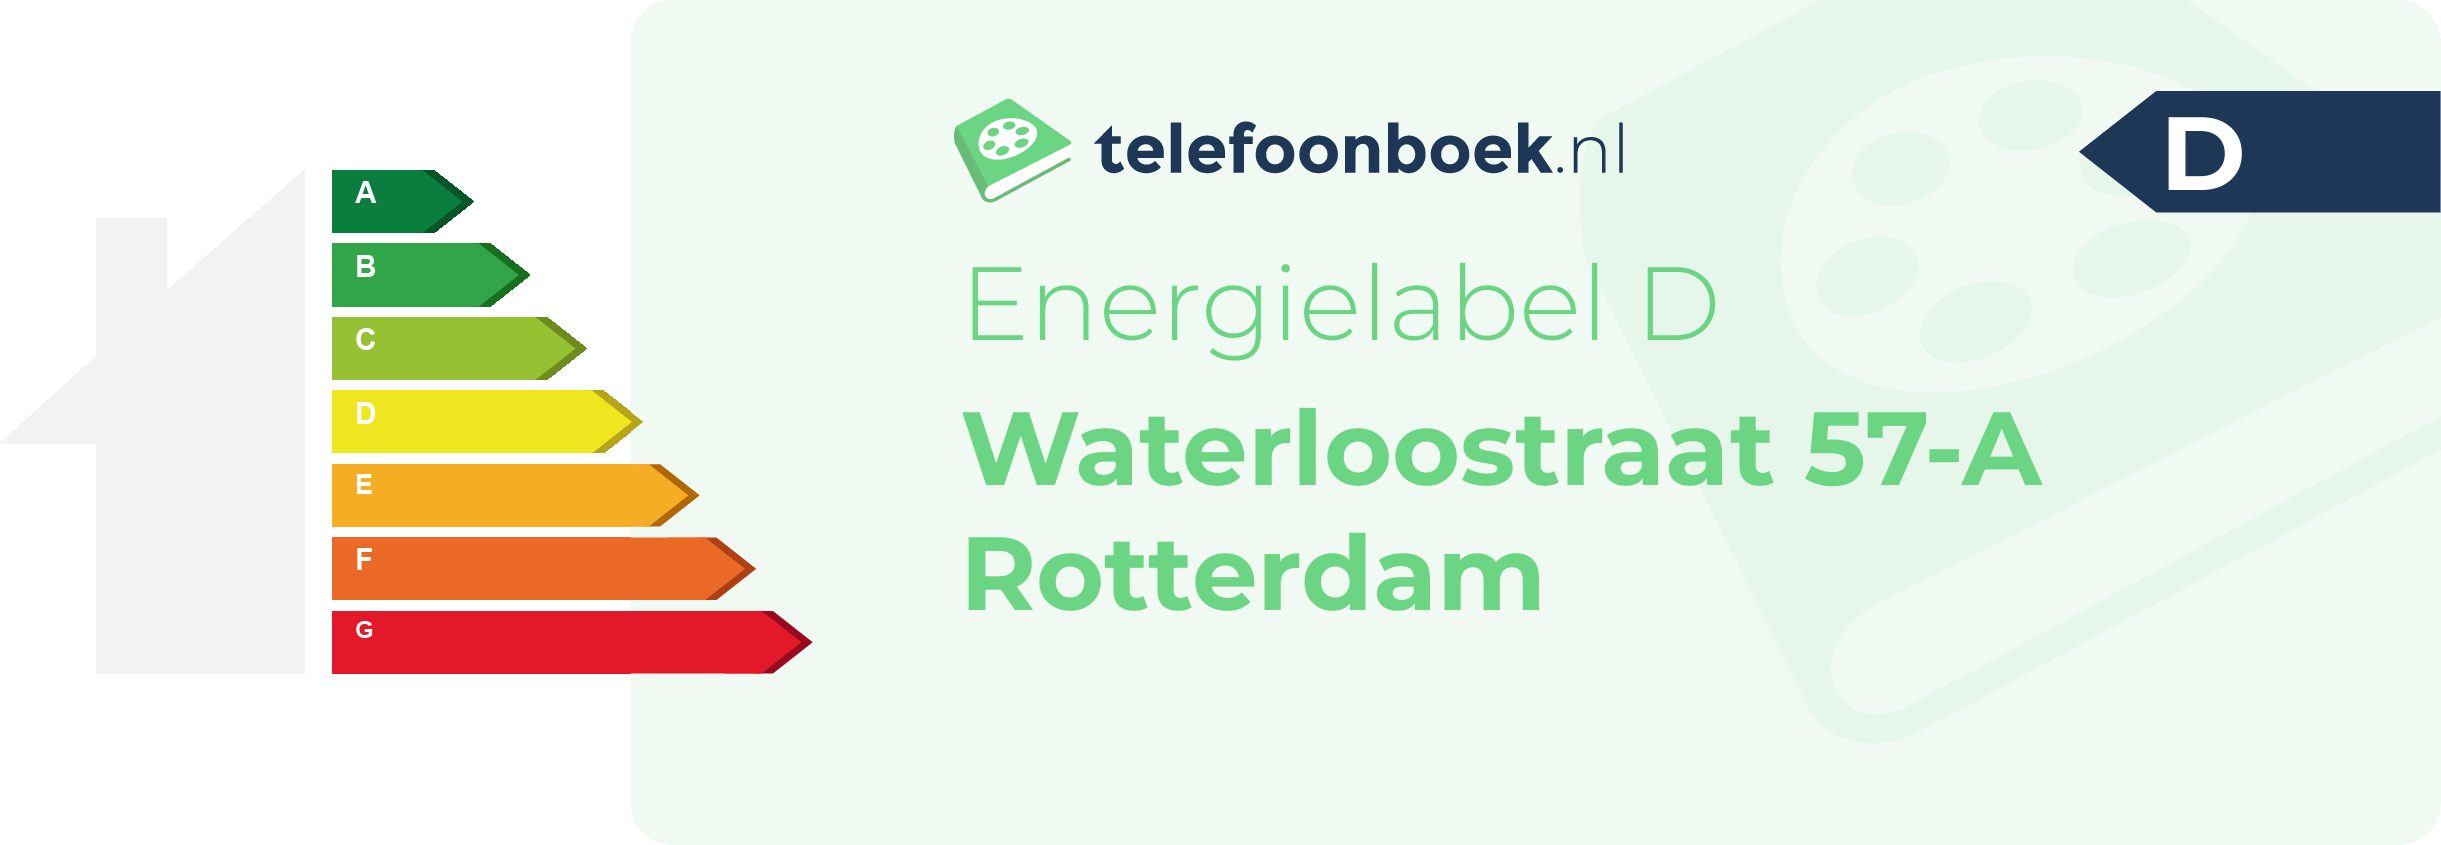 Energielabel Waterloostraat 57-A Rotterdam